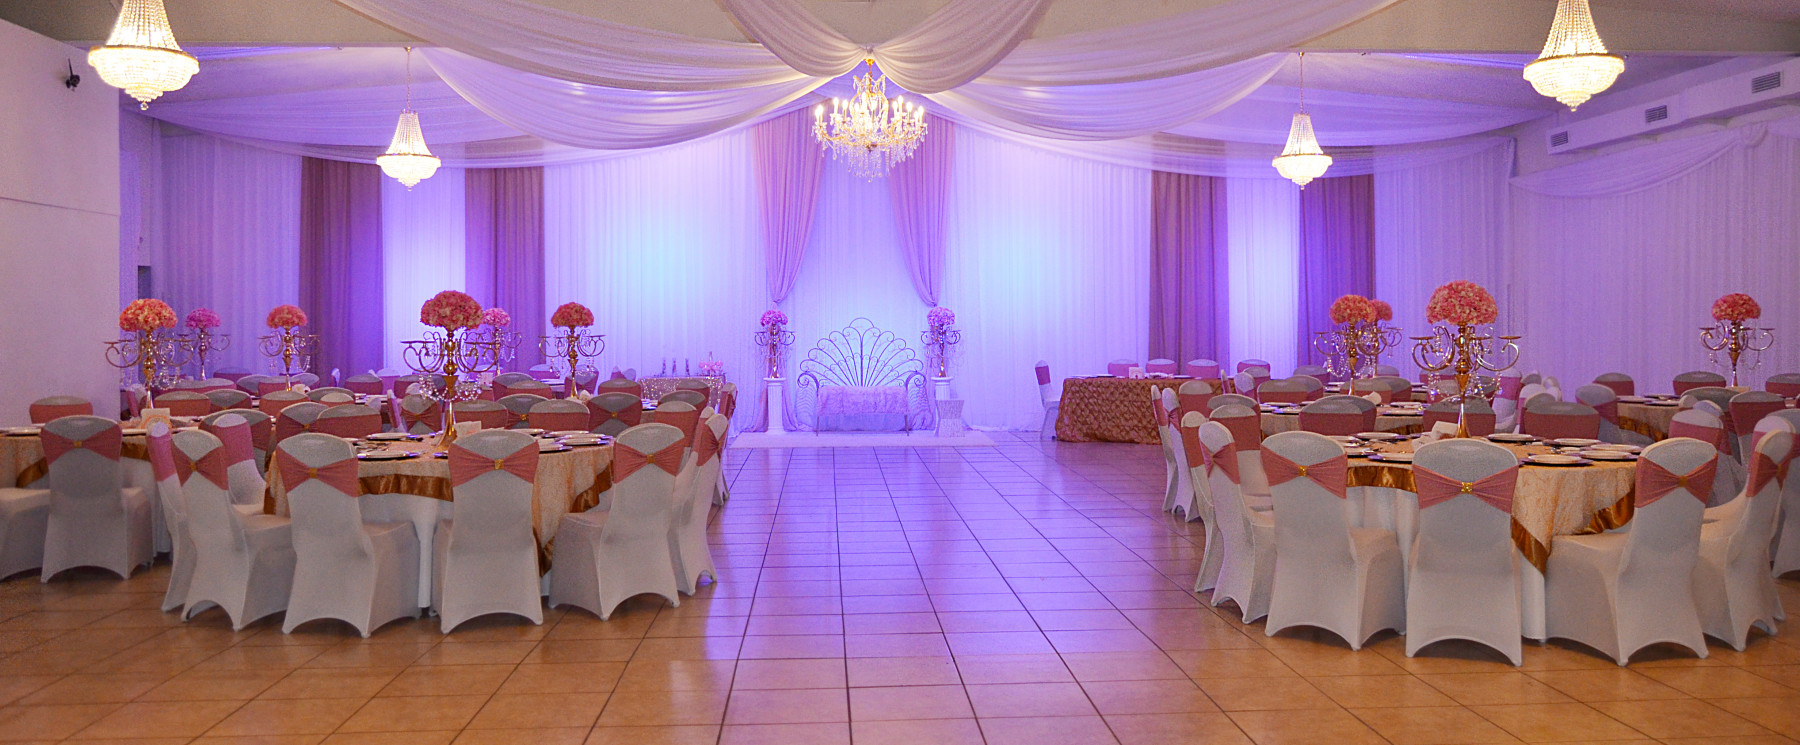 The Celebration Banquet Hall Salones para Eventos en Orlando FL